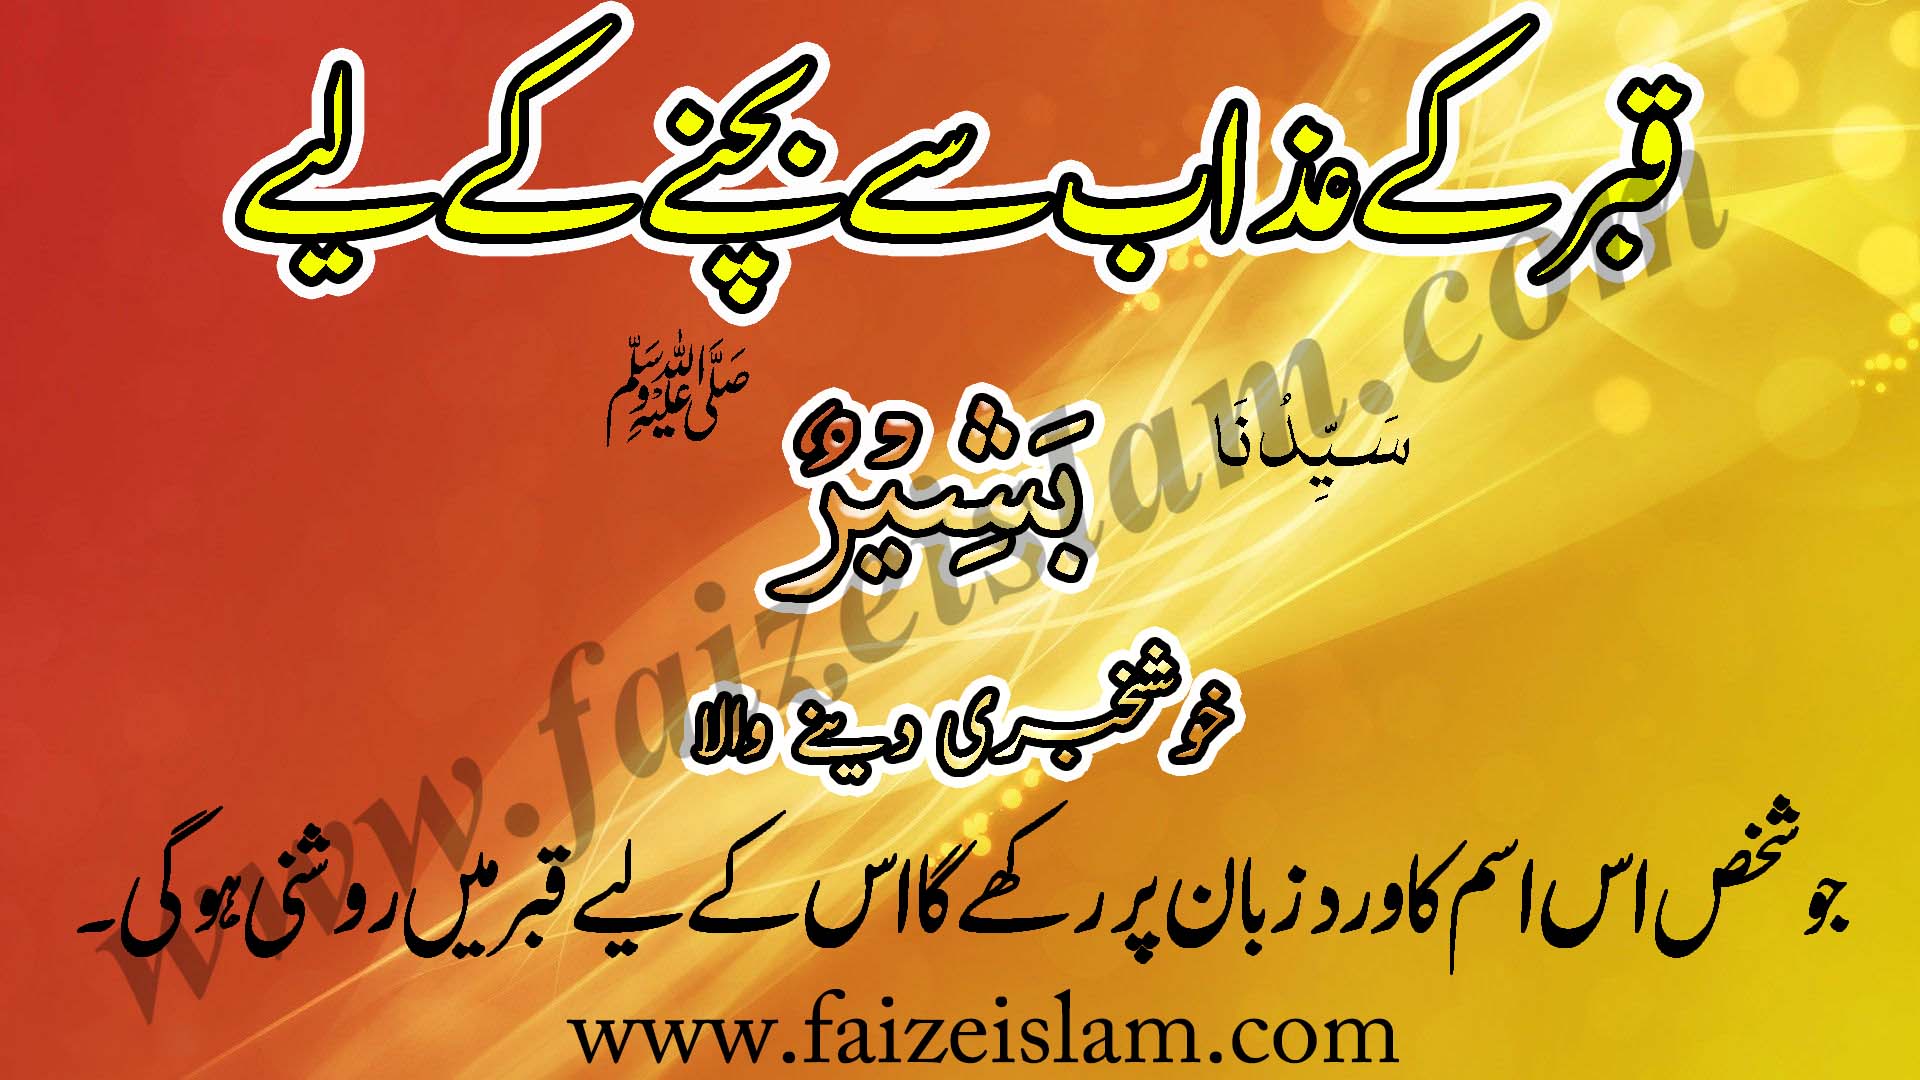 Qabar Kay Azaab Say Bachnay Kay Liye Wazifa In UrduQabar Kay Azaab Say Bachnay Kay Liye Wazifa In Urdu